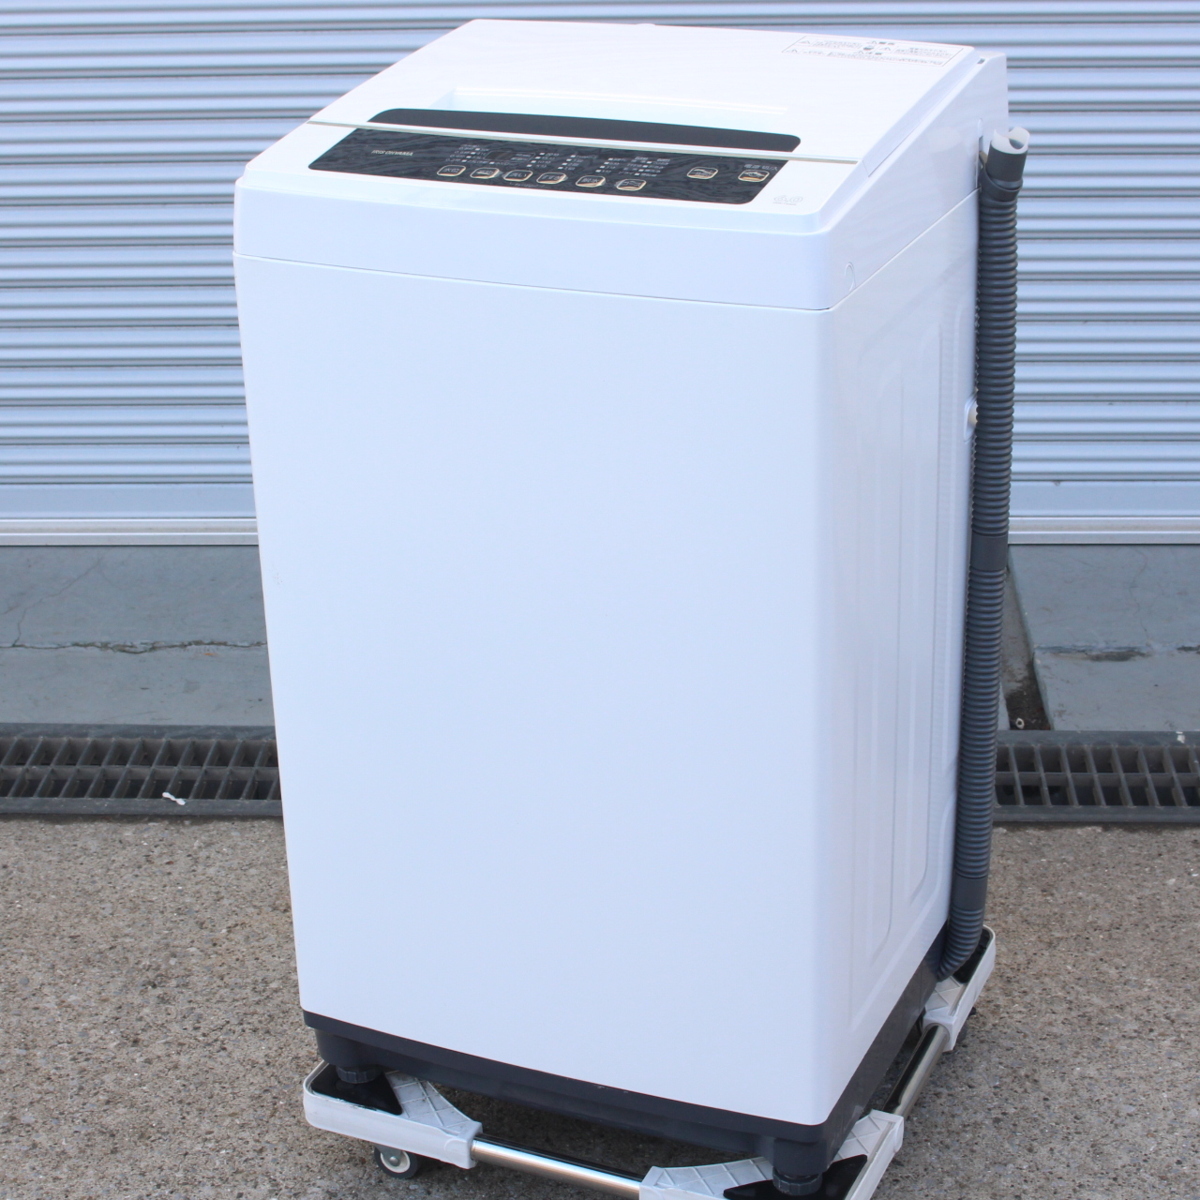 東京都世田谷区にて アイリスオーヤマ 乾燥機能付き全自動洗濯機 IAW-T602E 2020年製 を出張買取させて頂きました。